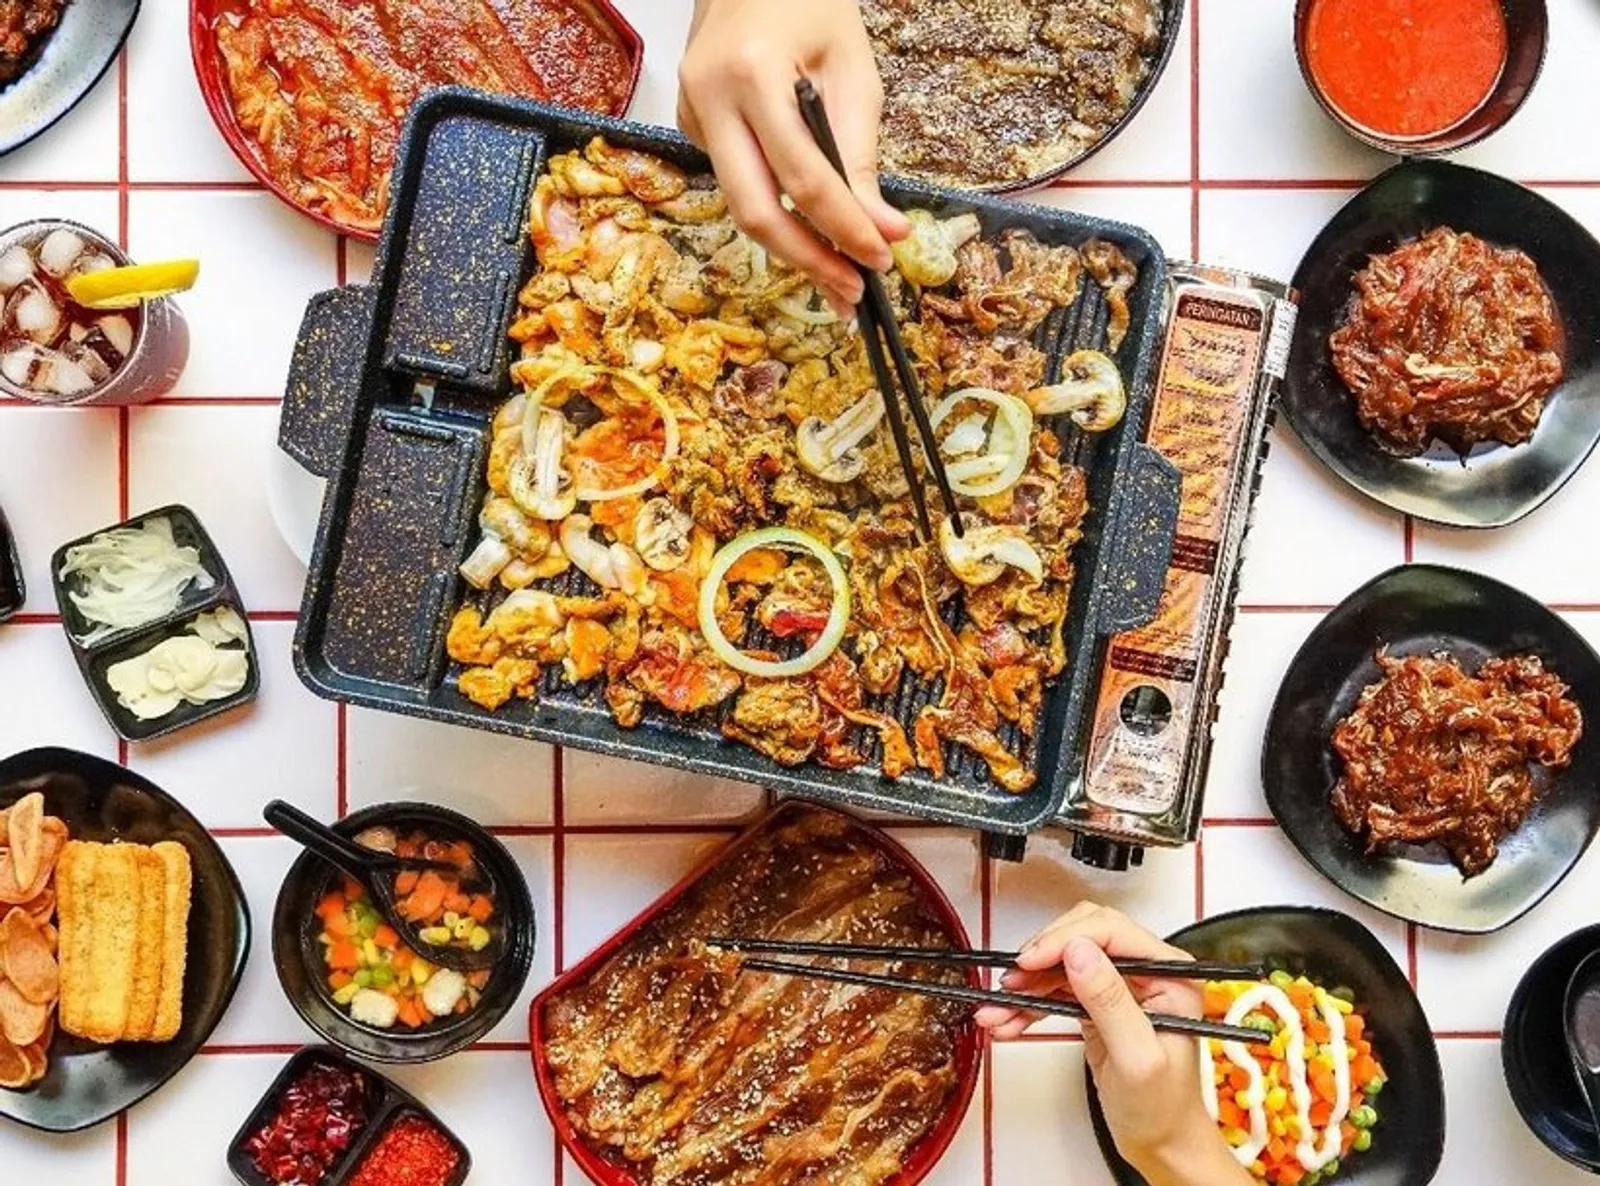 BBQ di Rumah Aja, Ini 11 Restoran di Jakarta yang Layani Delivery